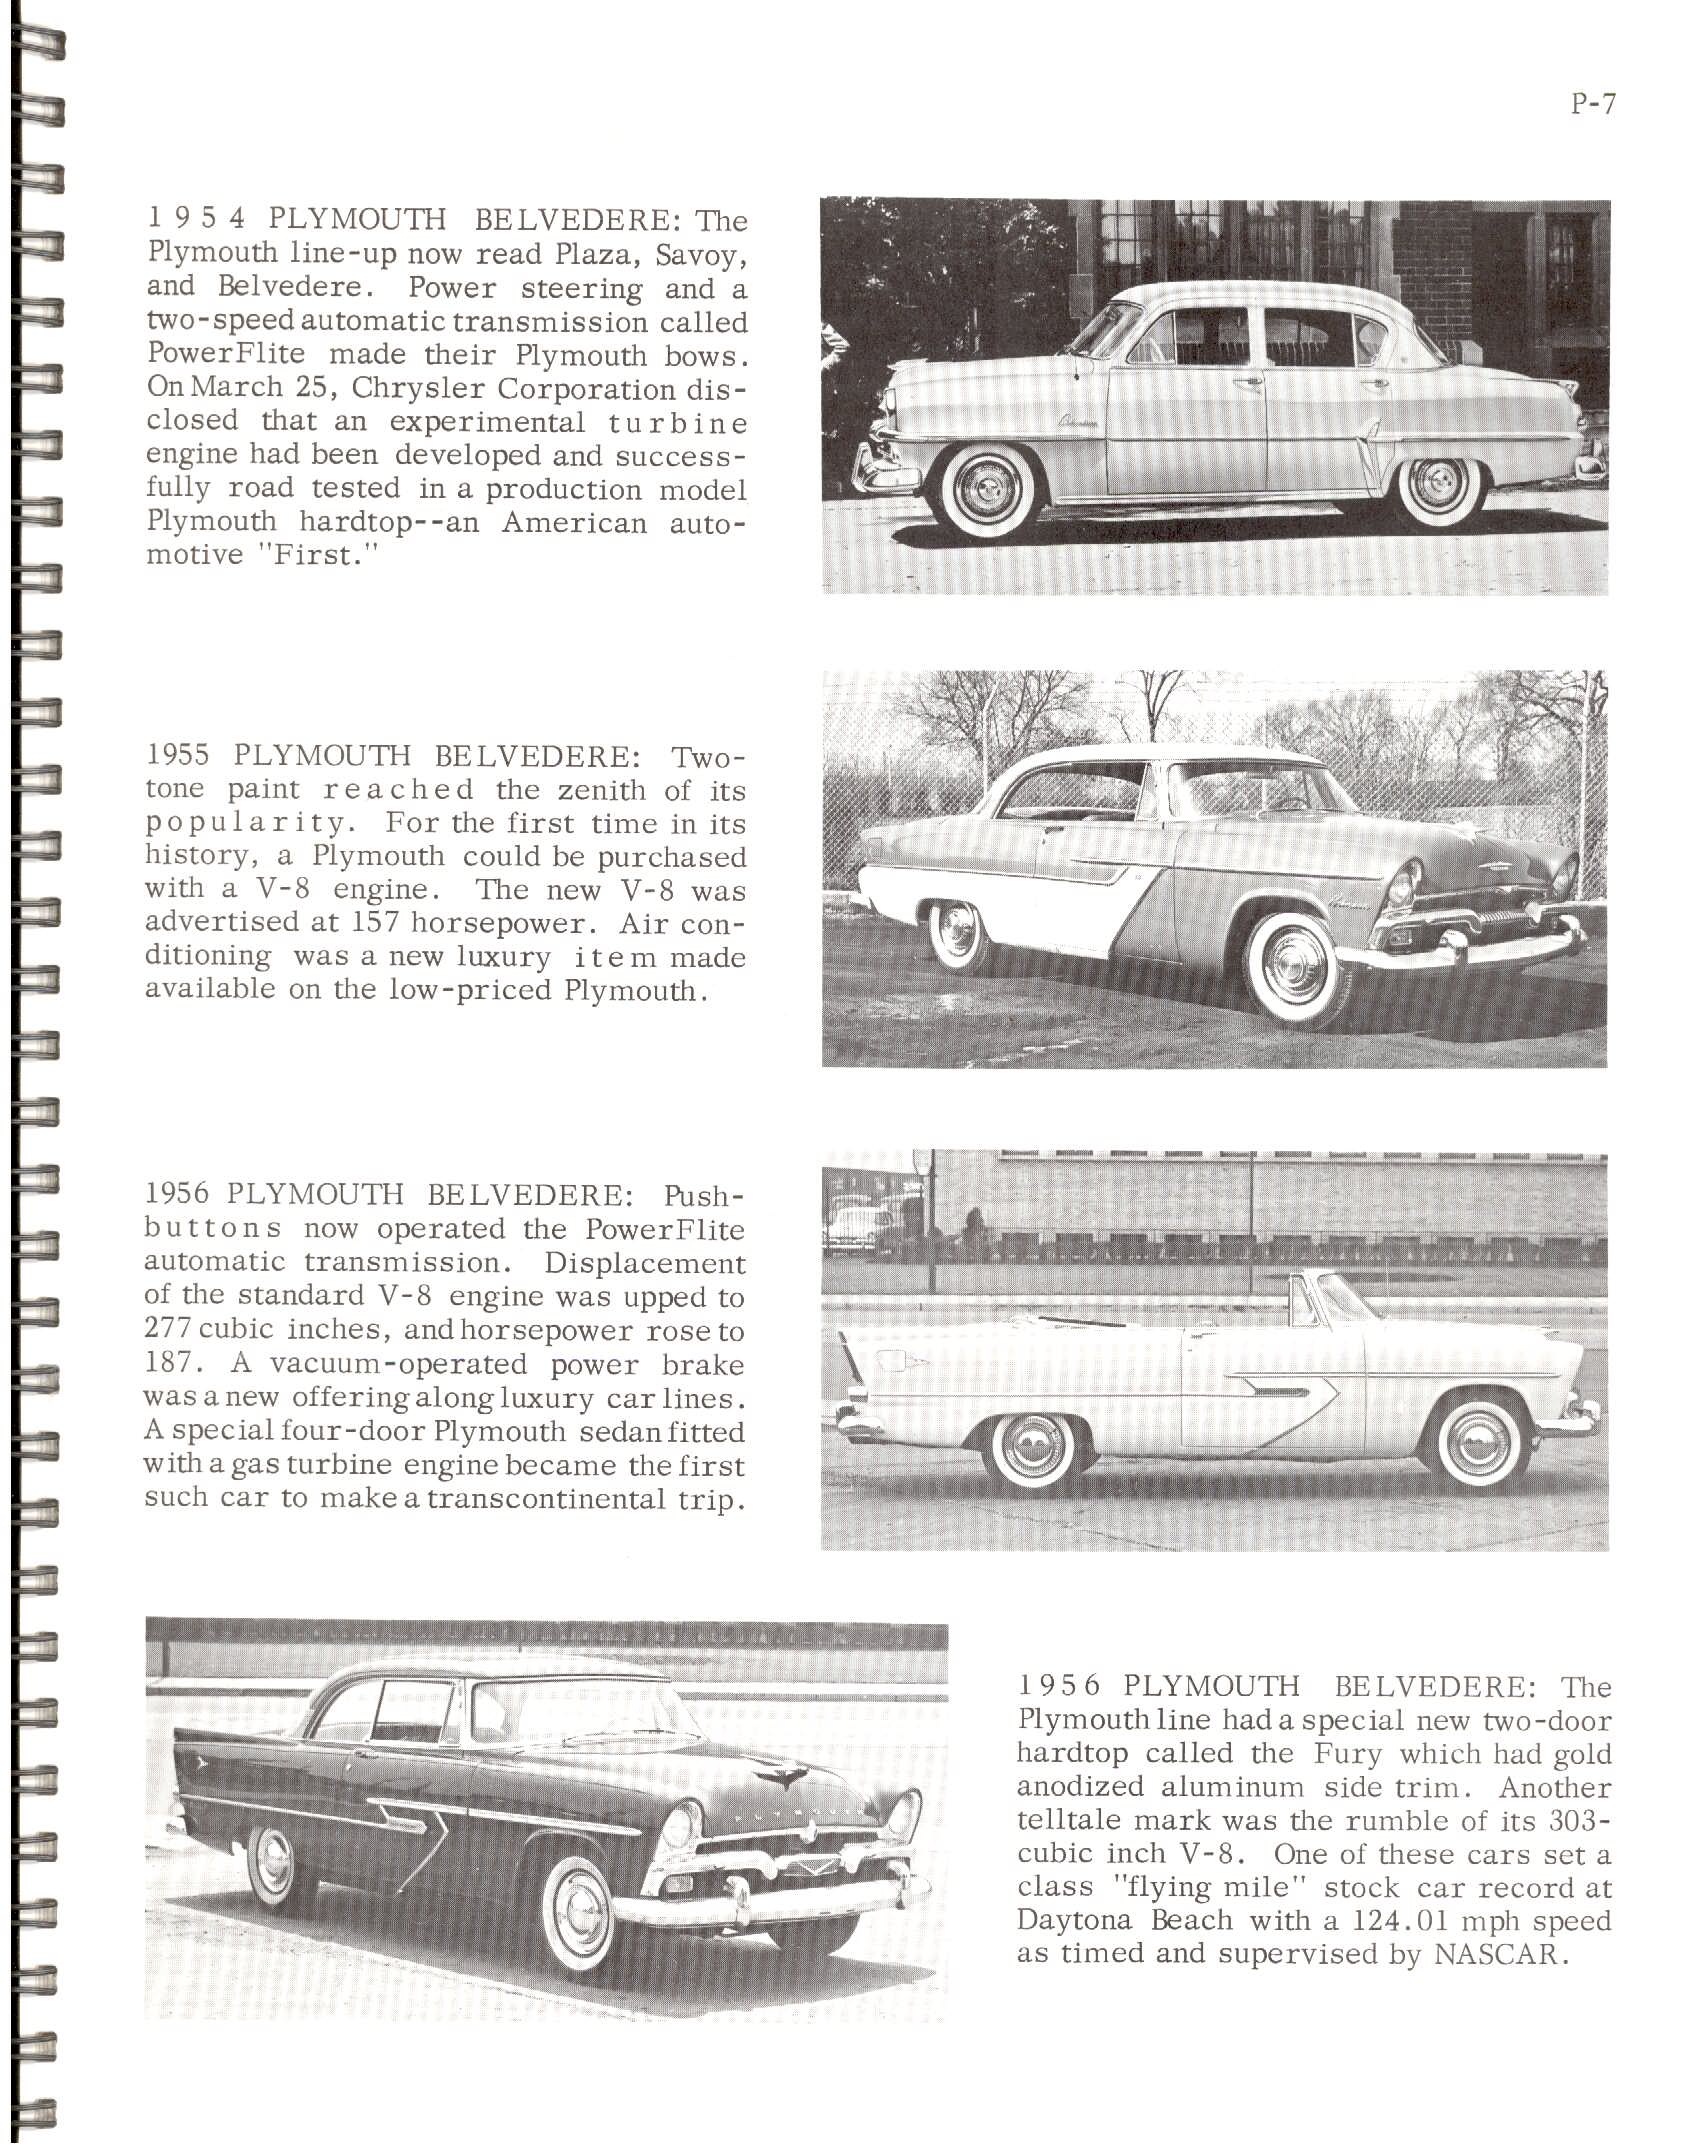 1966-History Of Chrysler Cars-P07